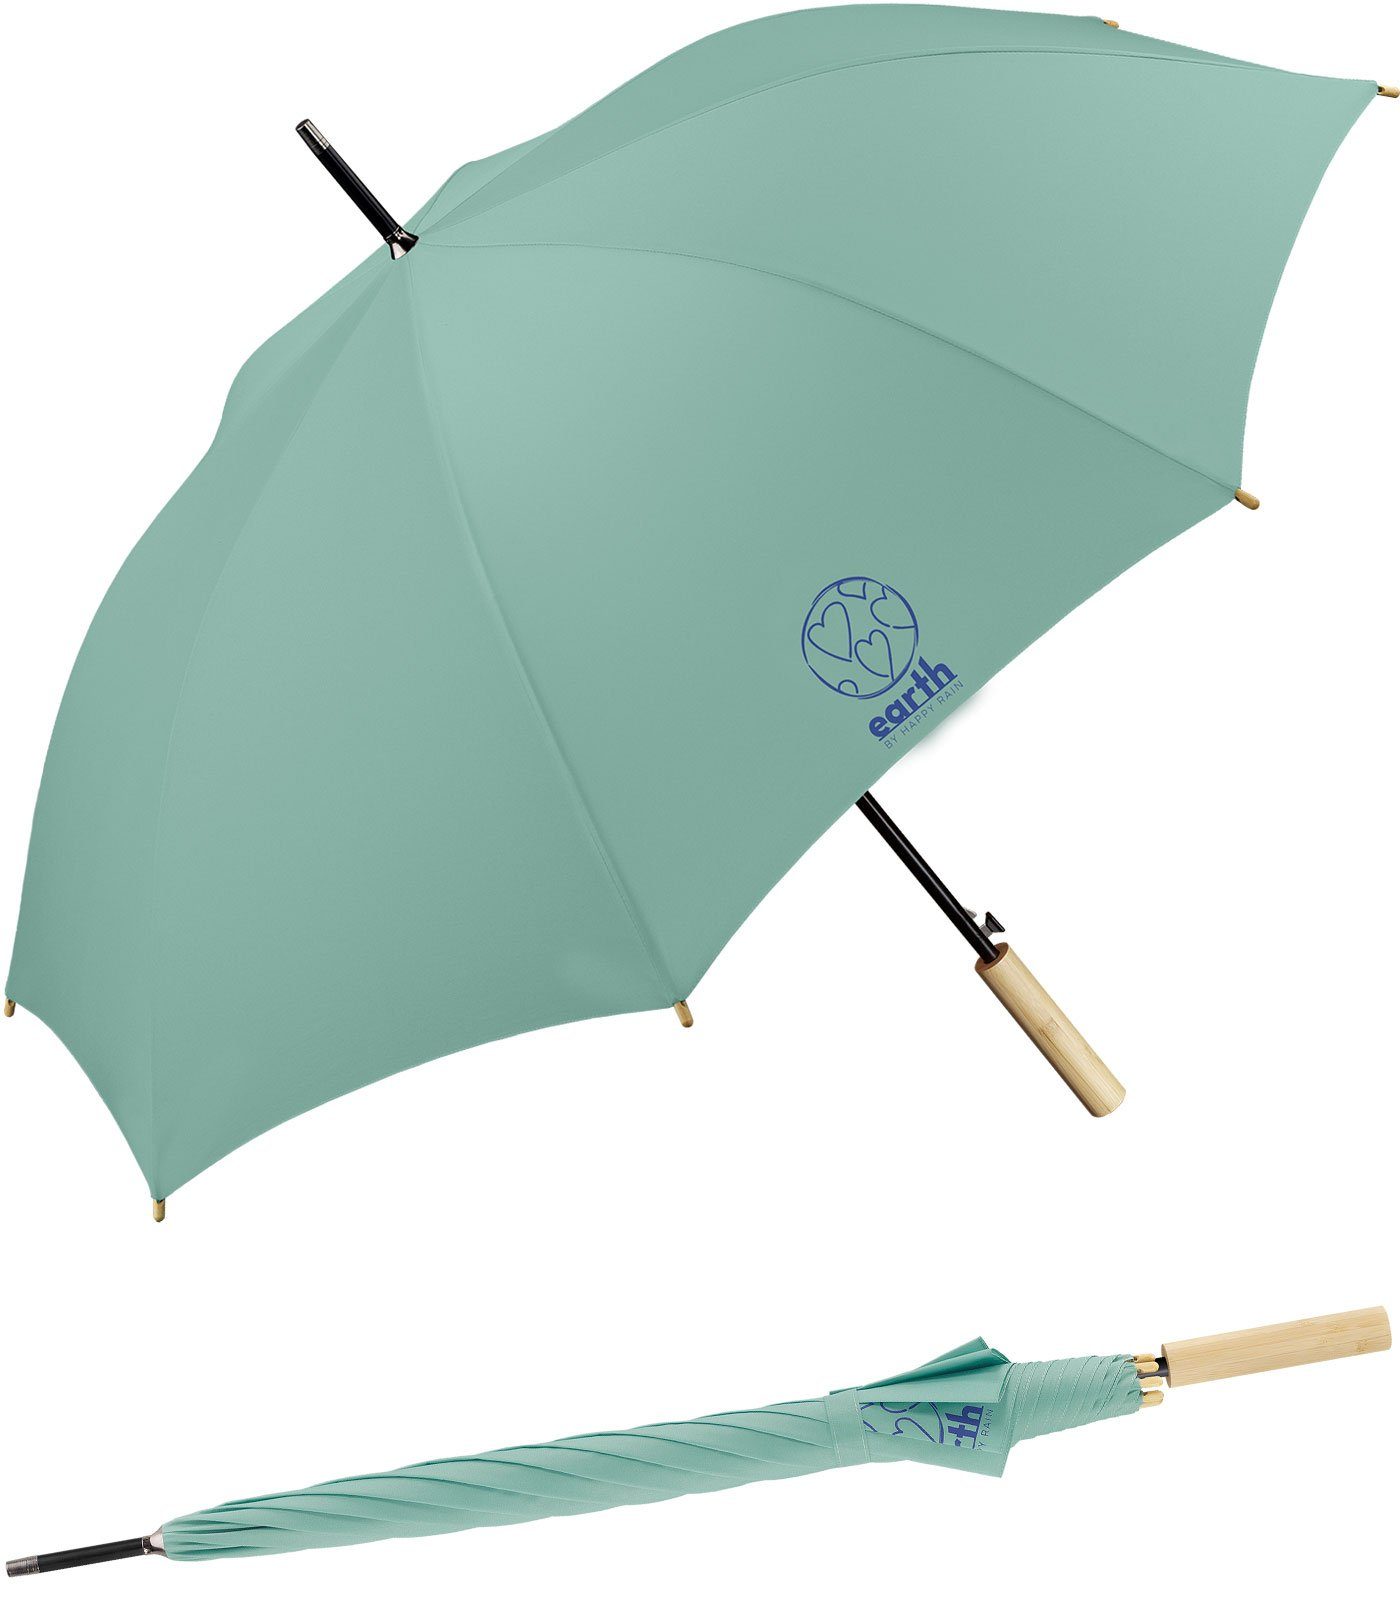 Earth die etwas tun HAPPY mit nachhaltiger für Umwelt geschützt - gut Schirm türkis Langregenschirm Auf-Automatik, RAIN